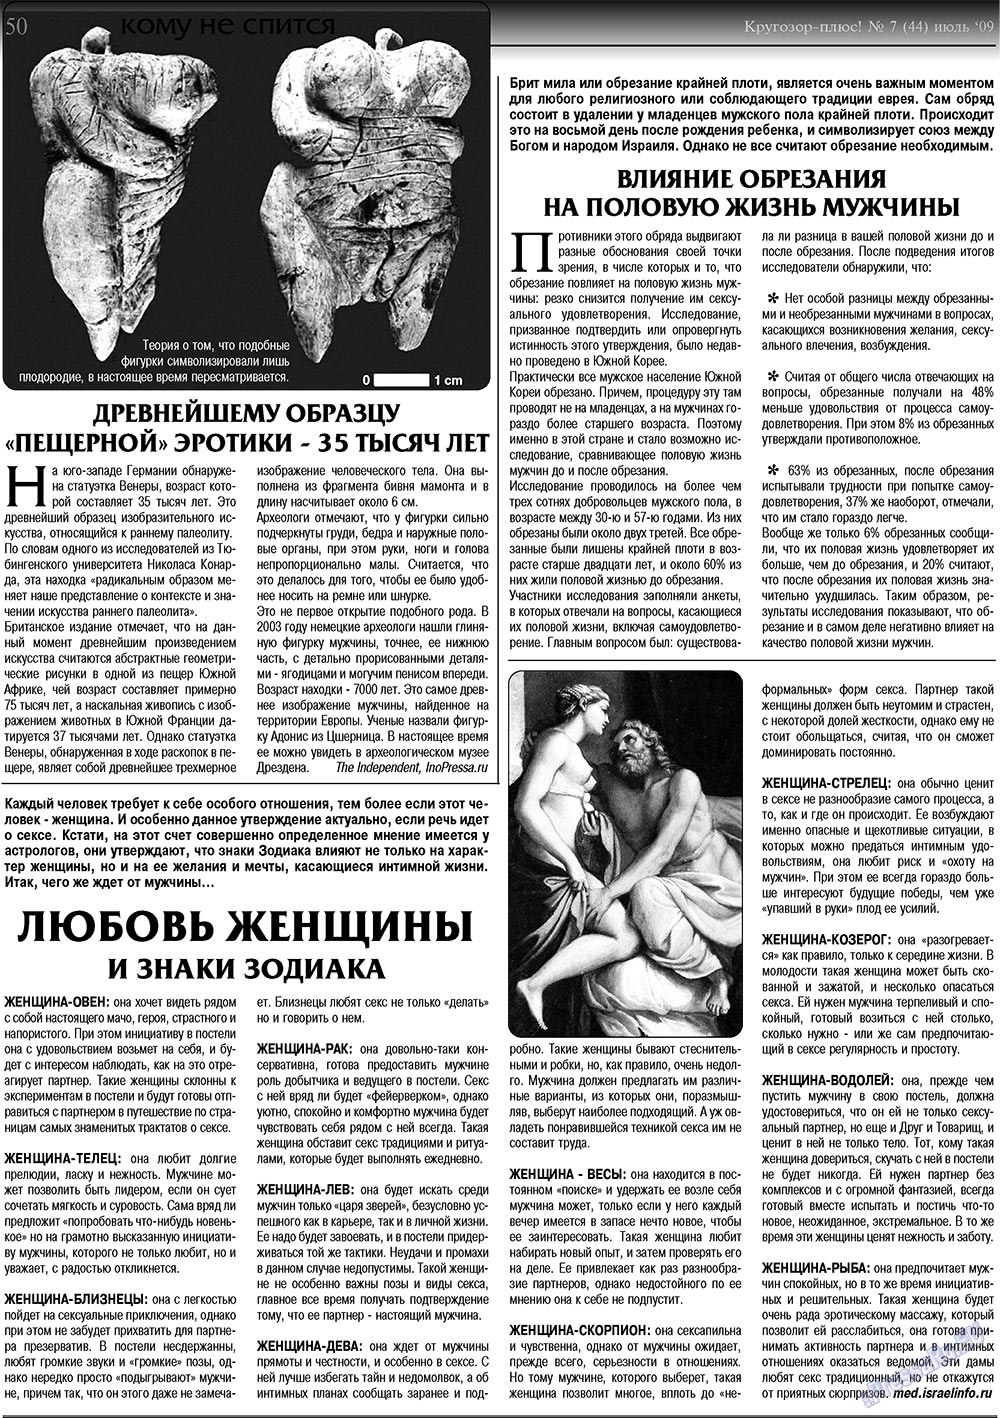 Кругозор плюс!, газета. 2009 №7 стр.50